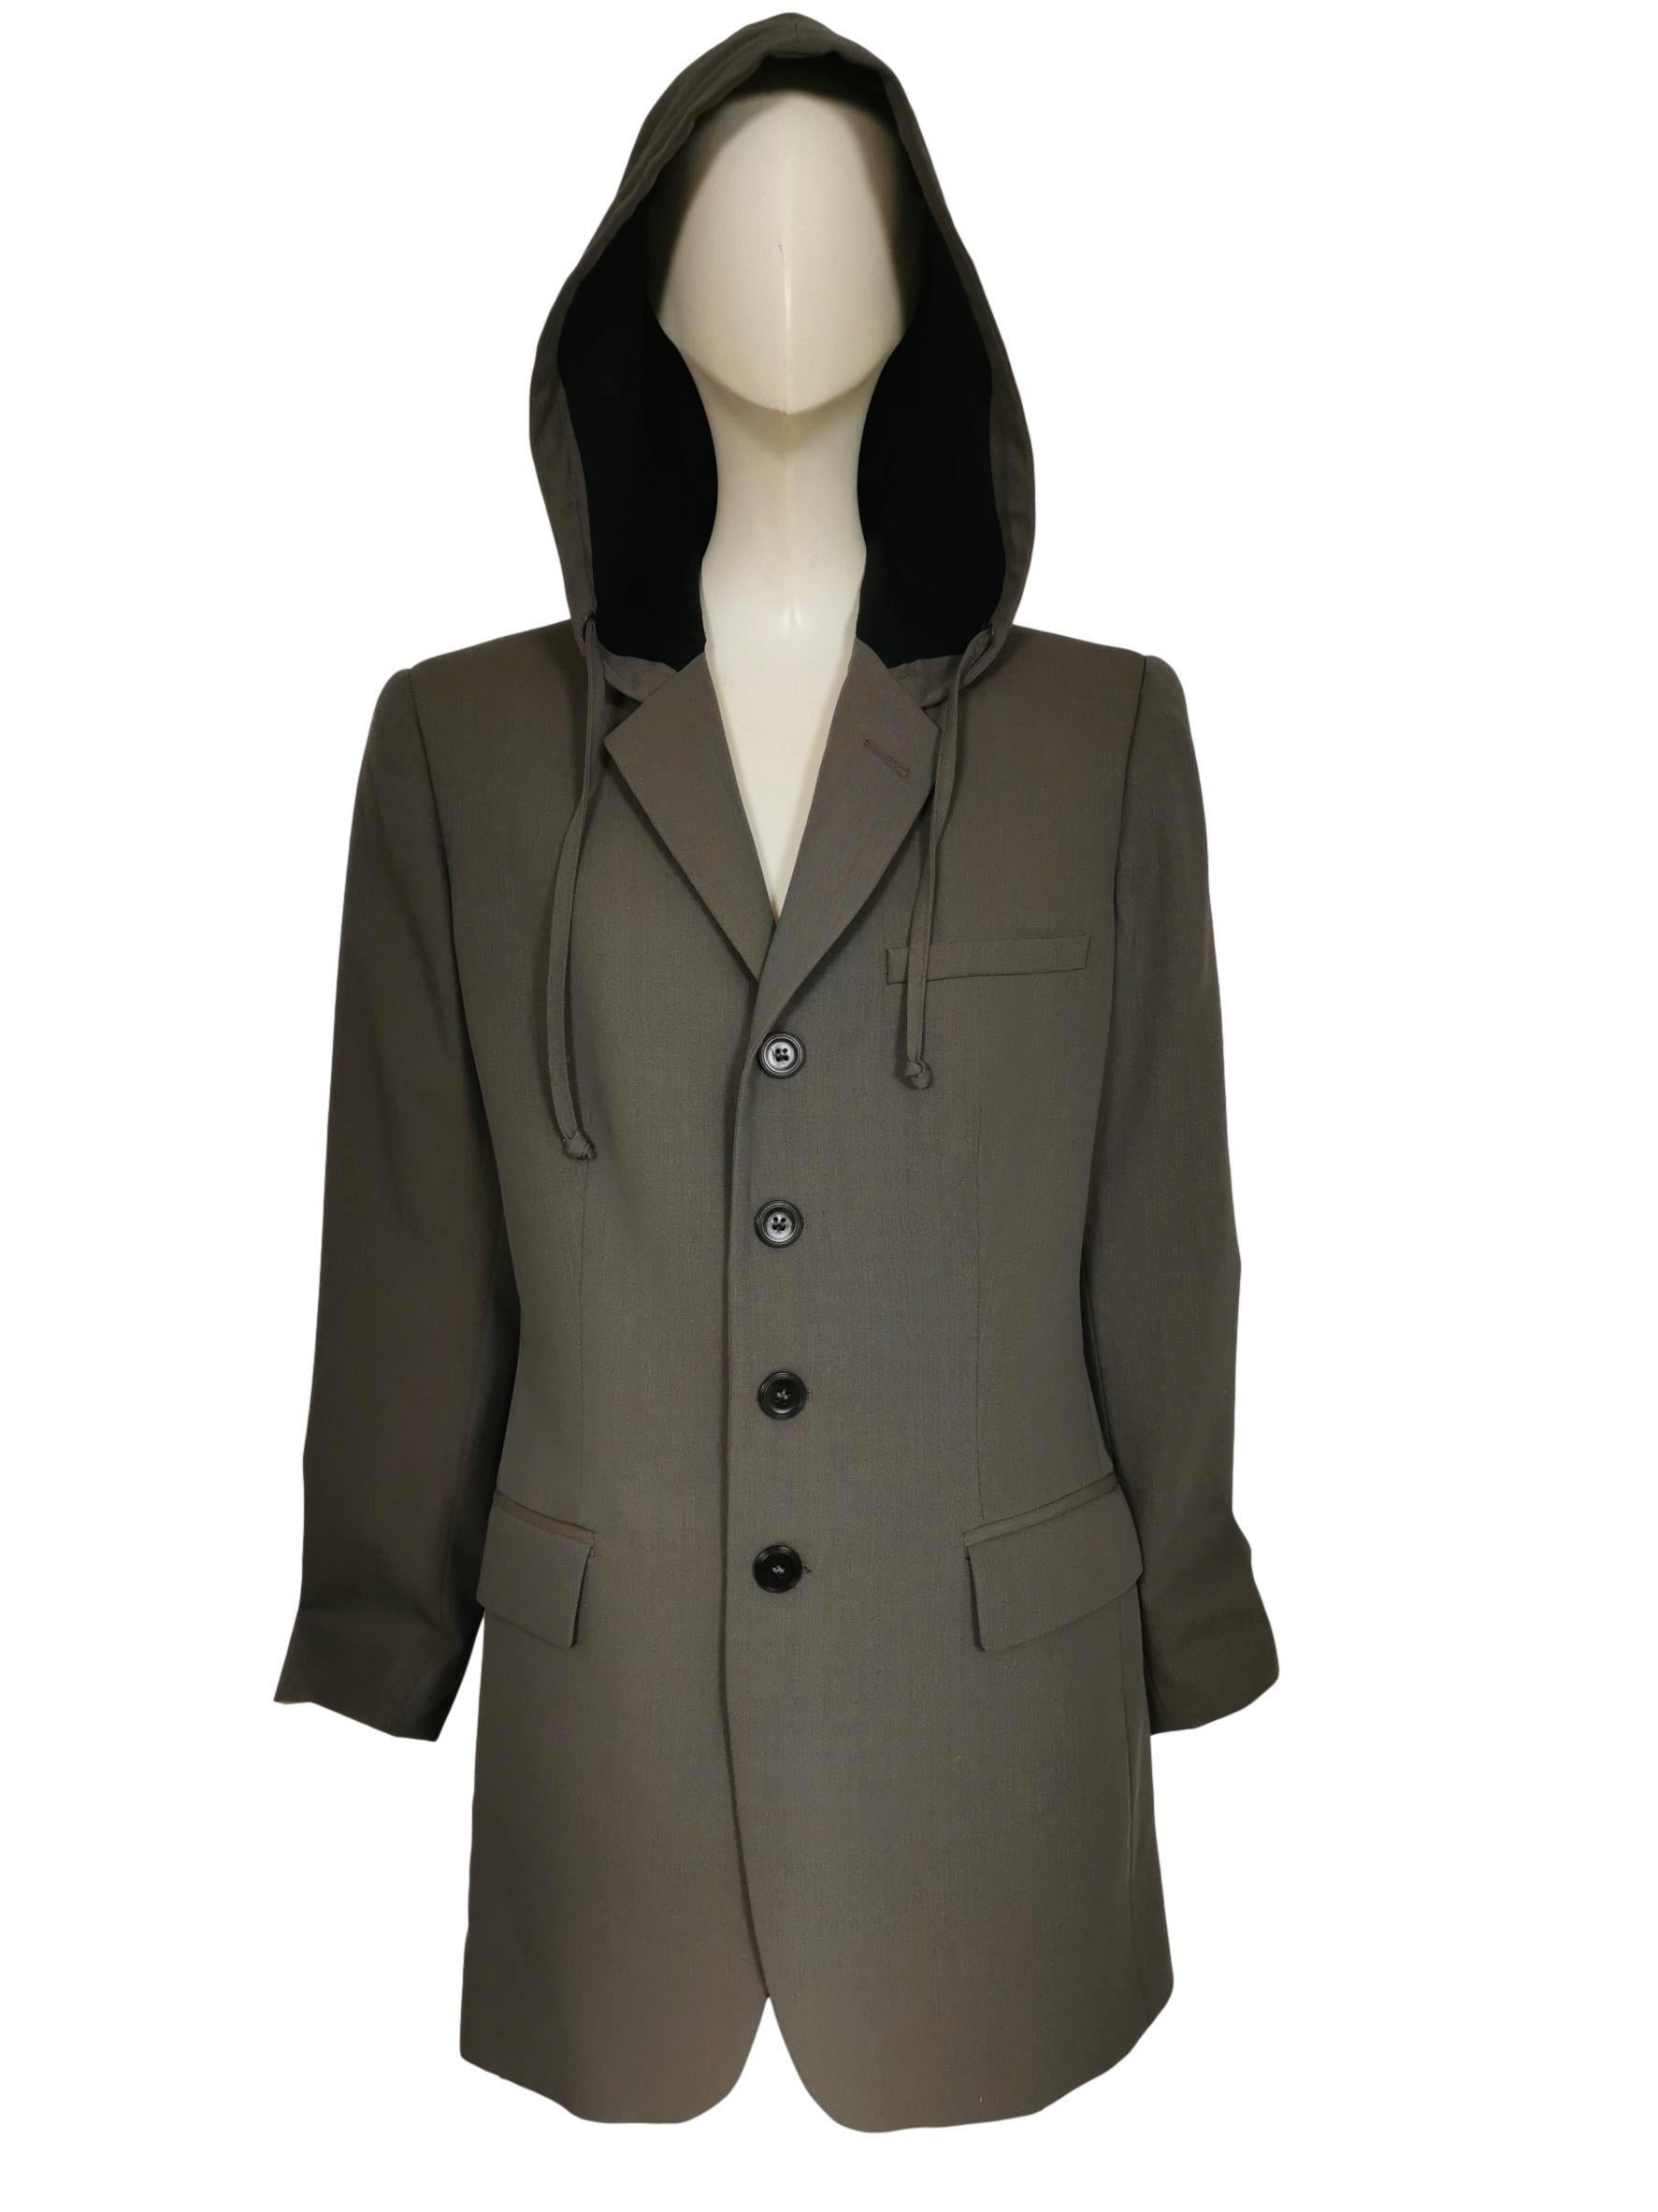 Gray Jean Paul Gaultier Hooded Dress Jacket Autumn/Winter 1998 For Sale